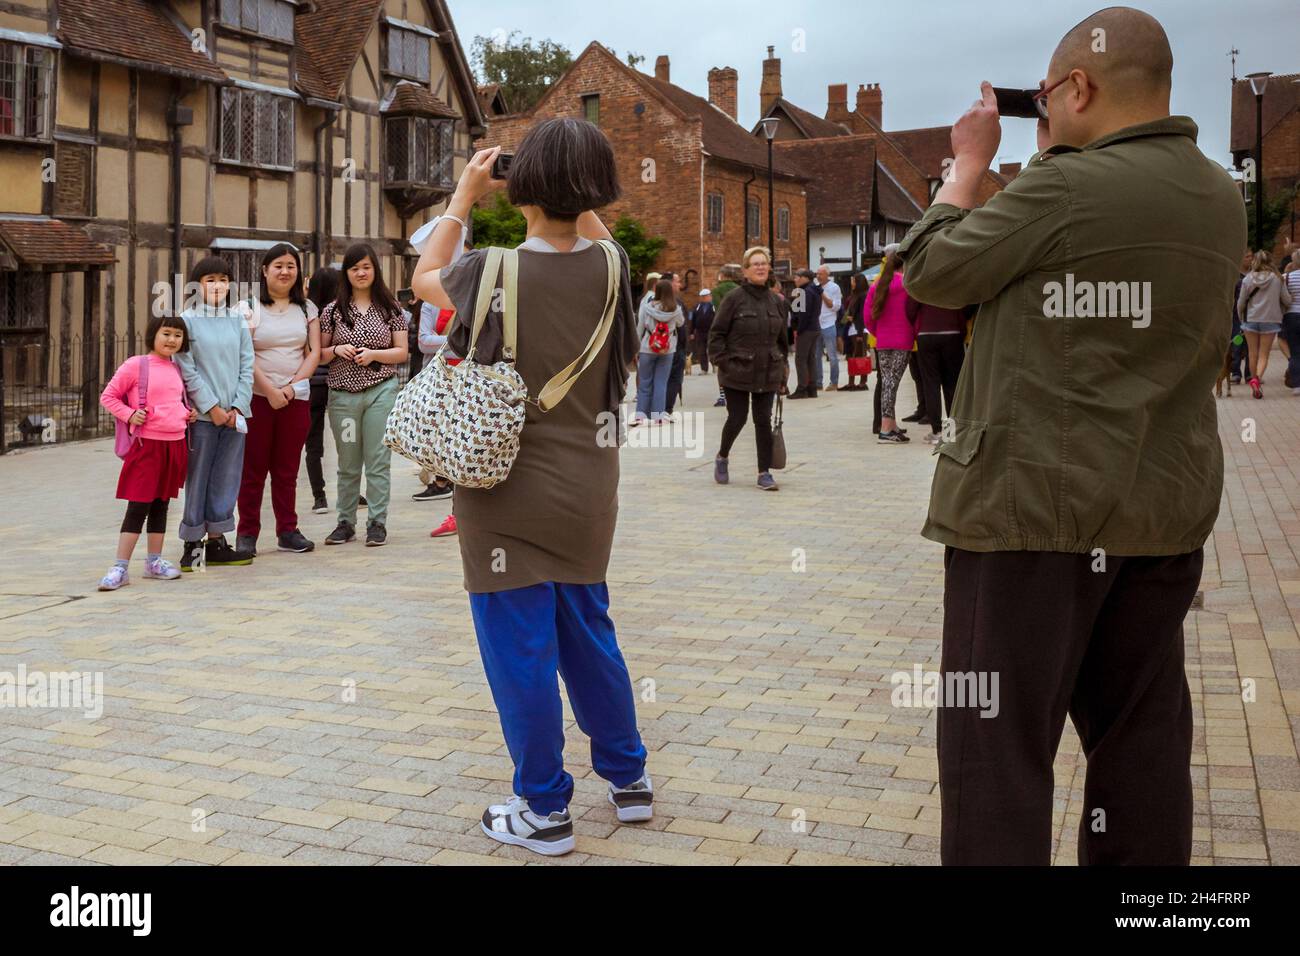 Une pose familiale pour des photos en dehors du lieu de naissance de William Shakespeare à Stratford-upon-Avon, Angleterre, Royaume-Uni. Banque D'Images